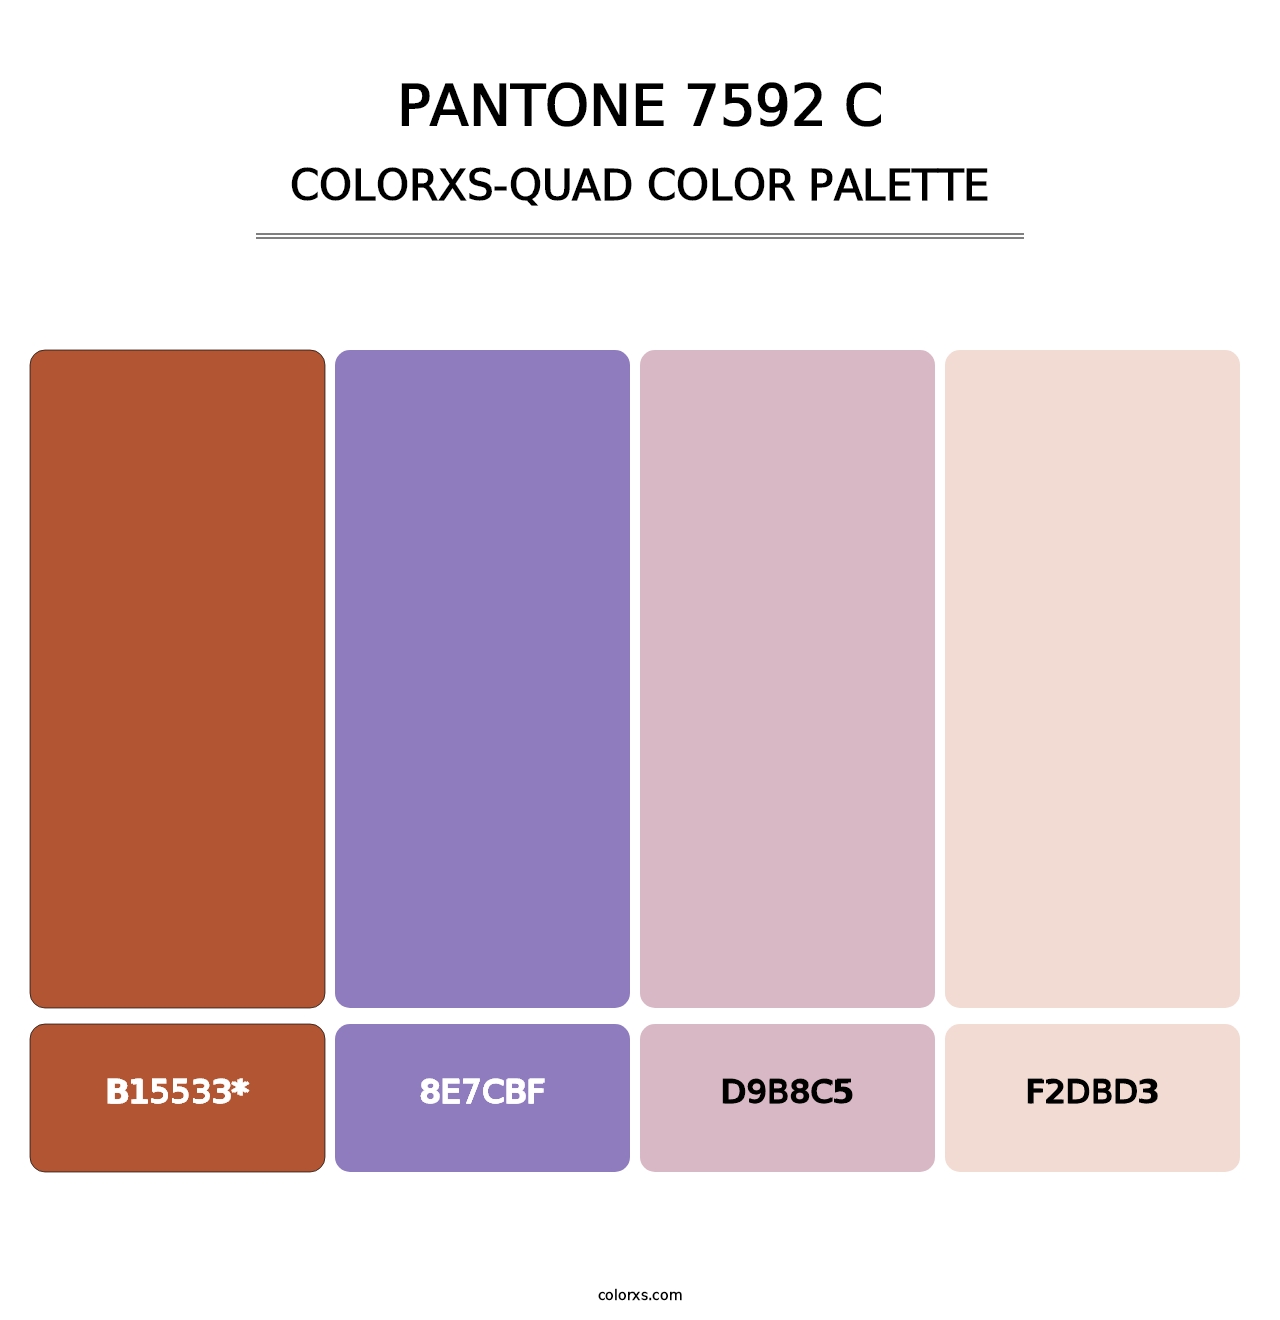 PANTONE 7592 C - Colorxs Quad Palette